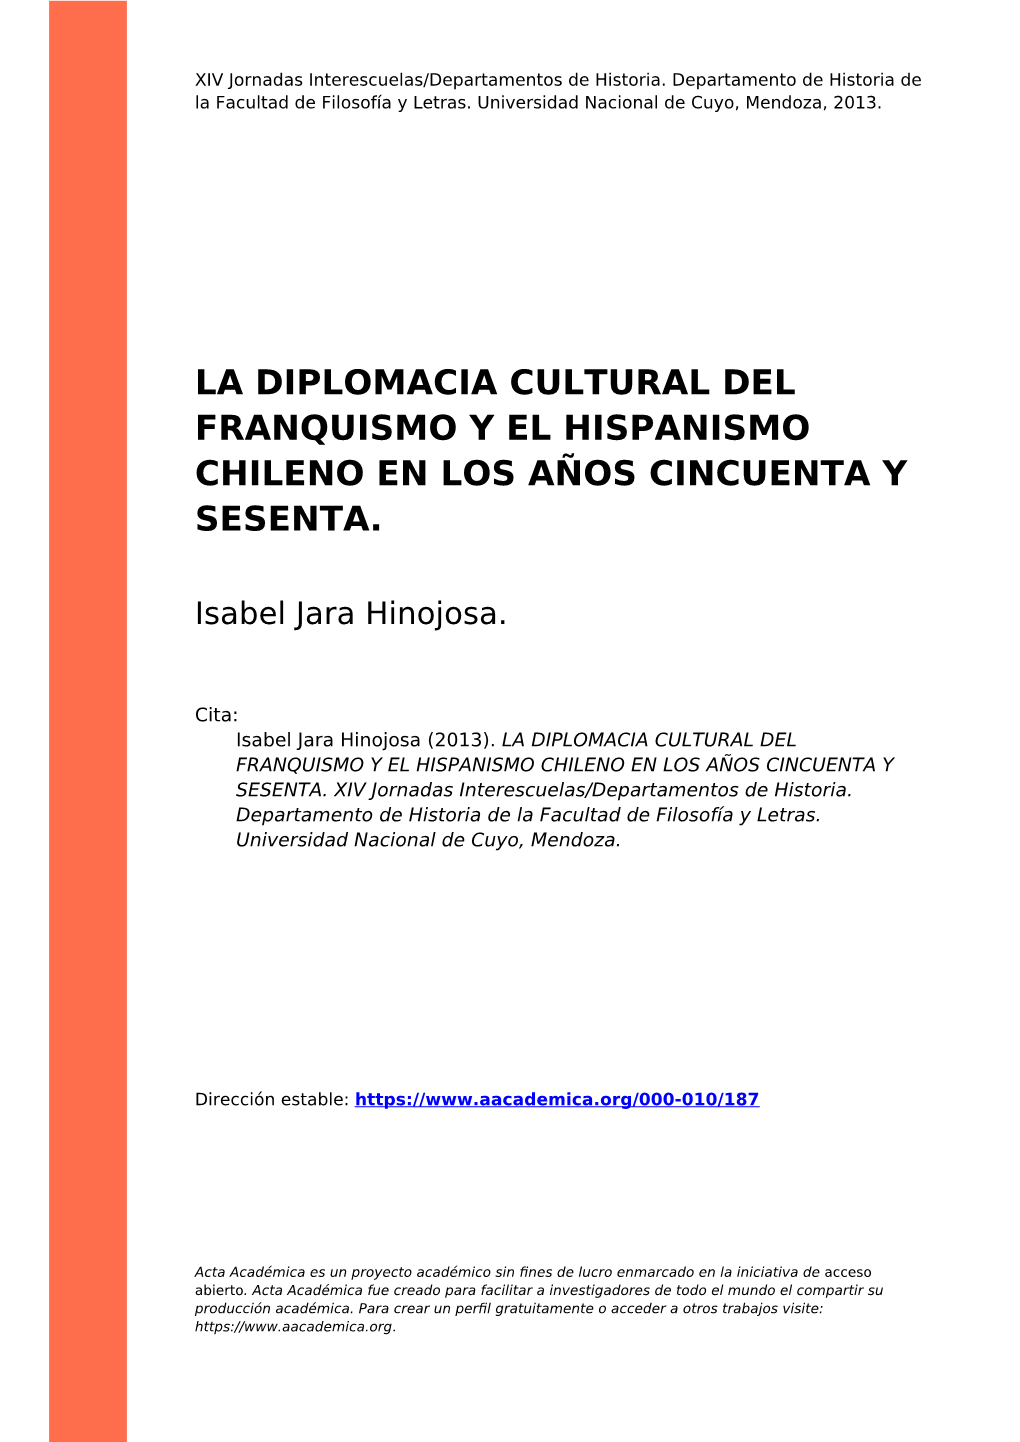 La Diplomacia Cultural Del Franquismo Y El Hispanismo Chileno En Los Años Cincuenta Y Sesenta